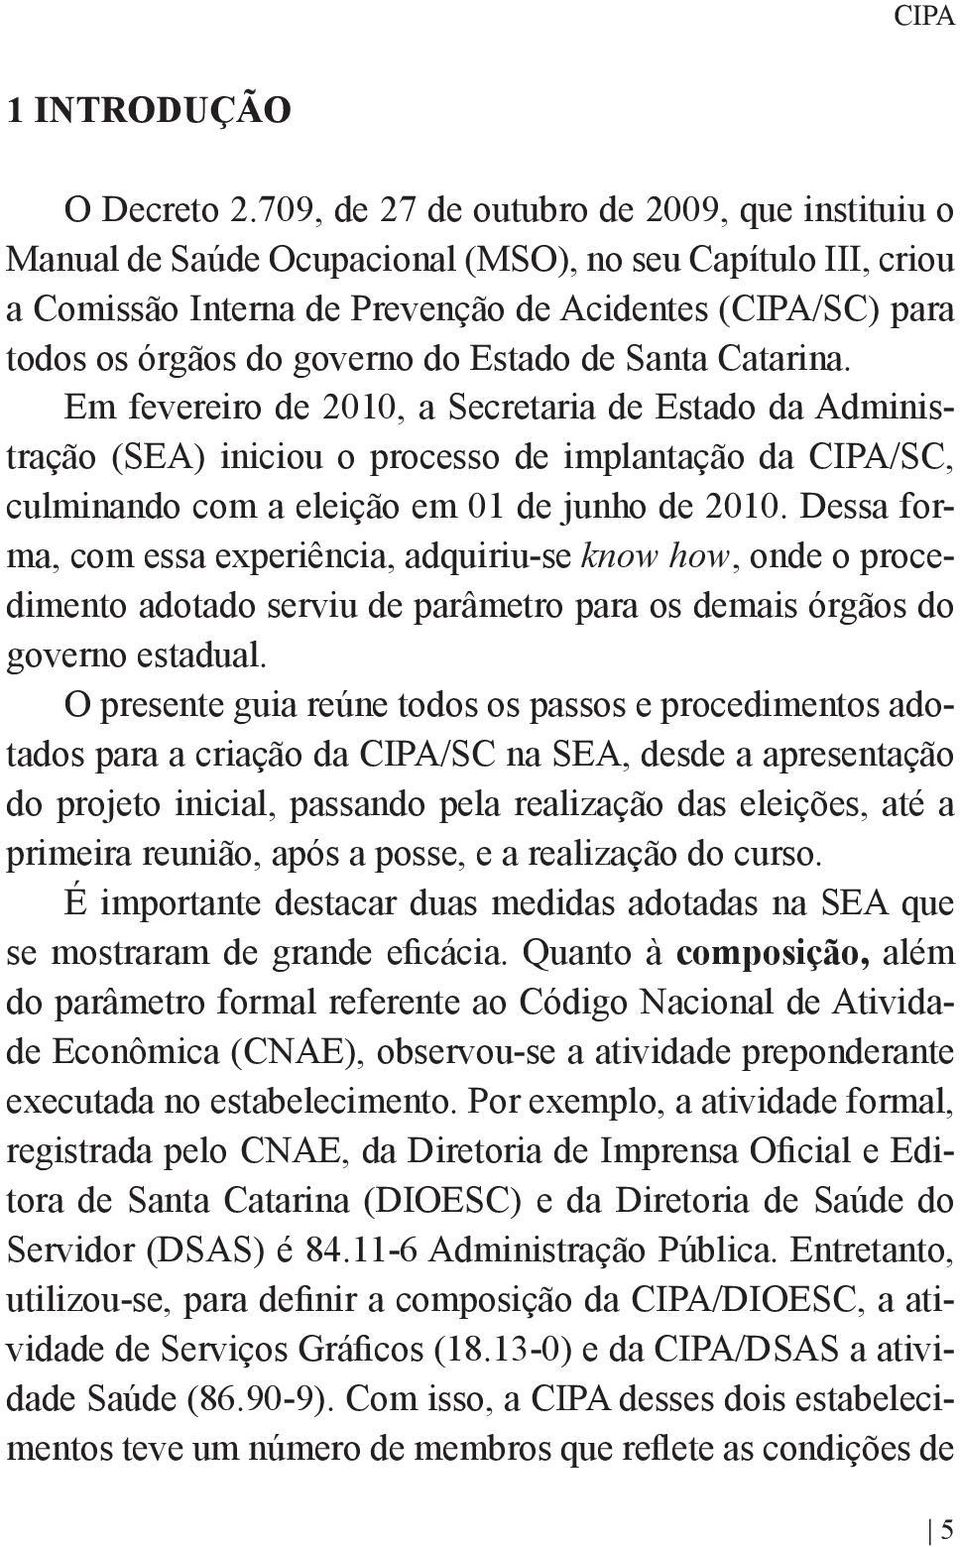 Estado de Santa Catarina. Em fevereiro de 2010, a Secretaria de Estado da Administração (SEA) iniciou o processo de implantação da CIPA/SC, culminando com a eleição em 01 de junho de 2010.